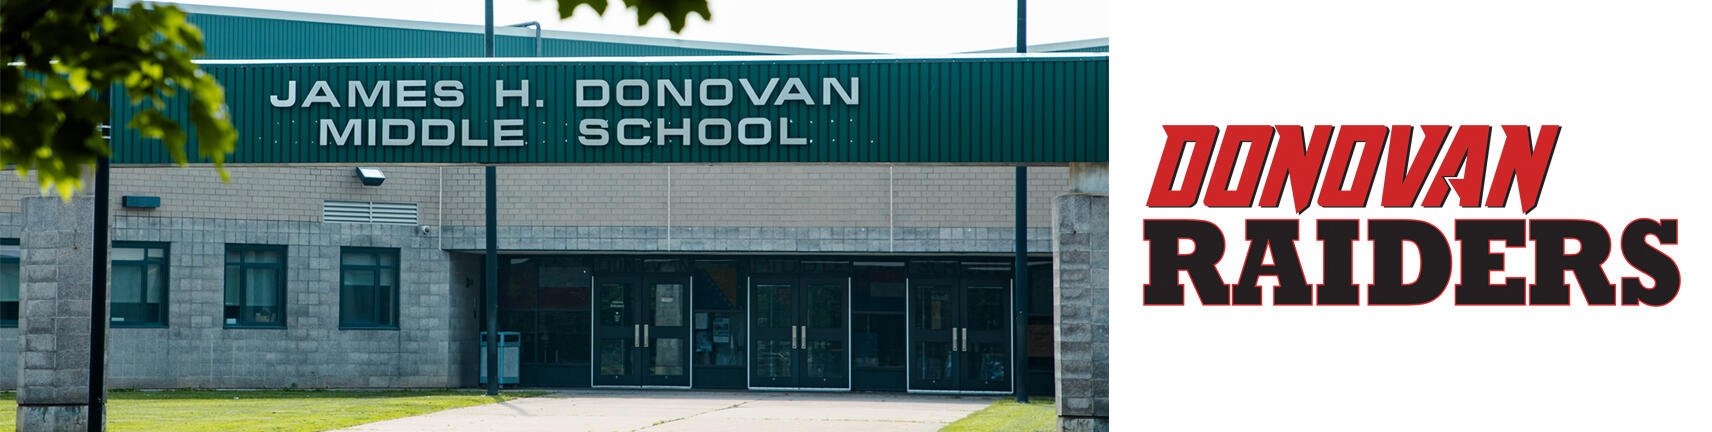 تصویر ساختمان مدرسه داناوان و لوگوی Donovan Raiders